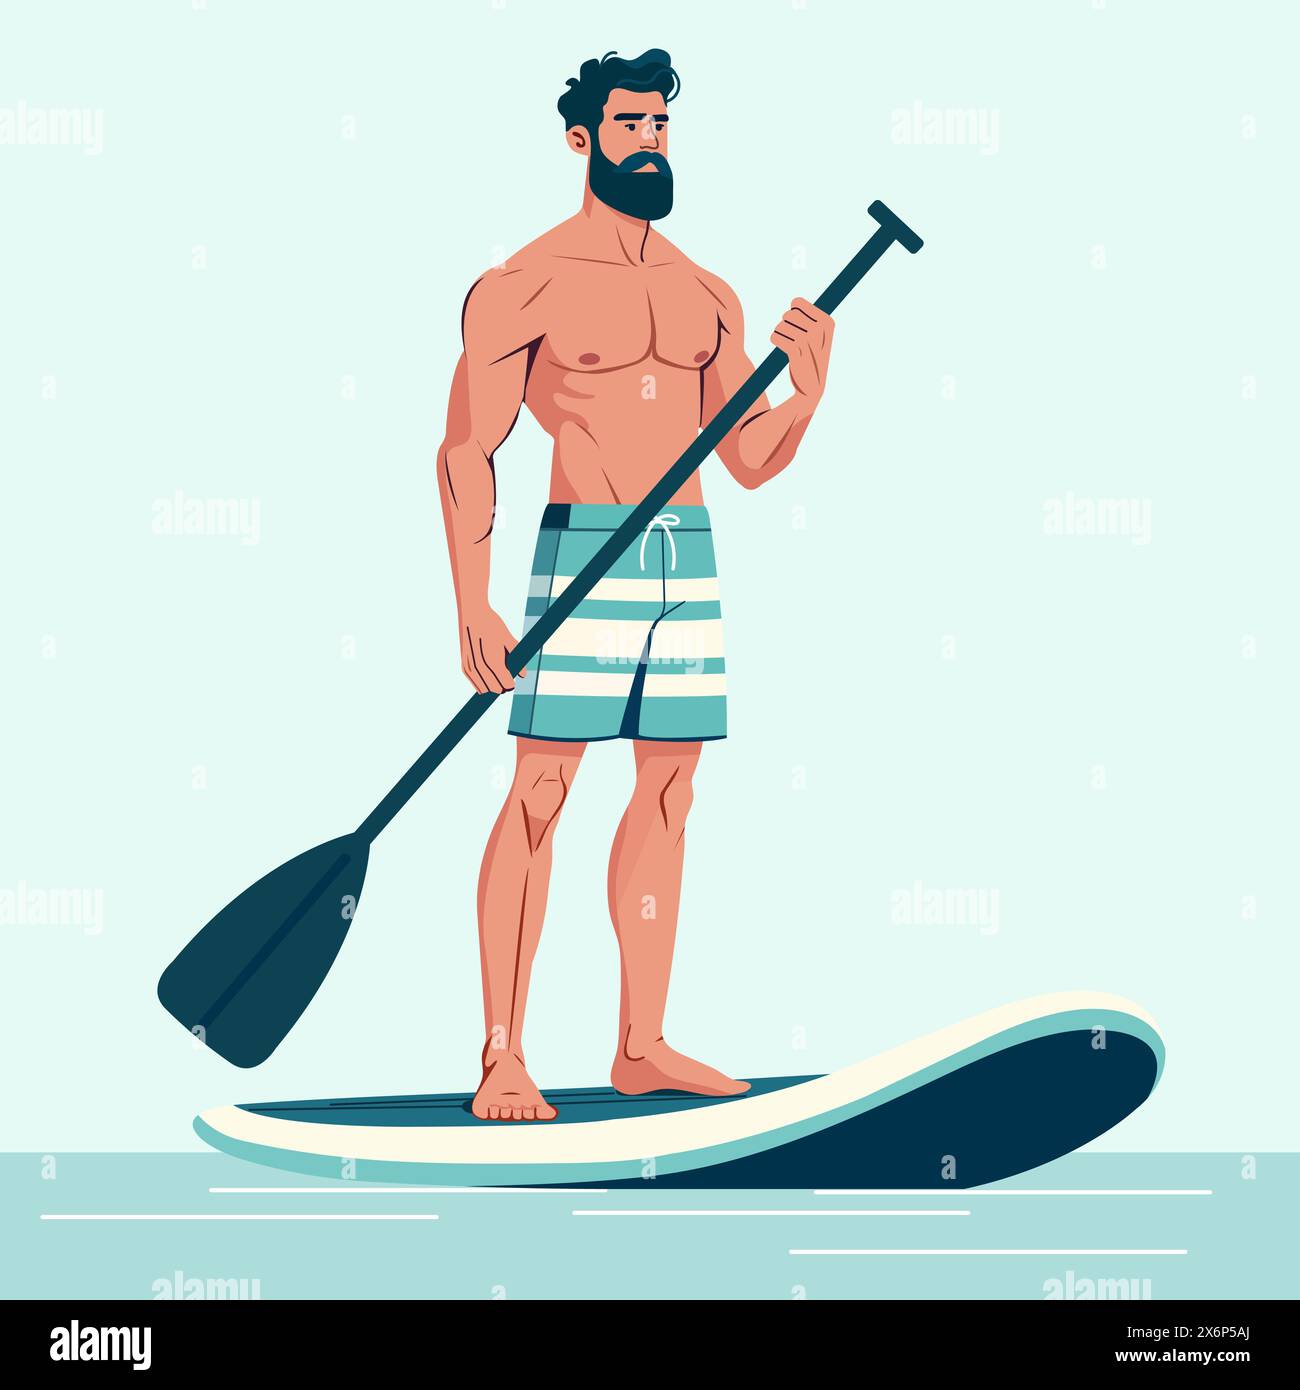 Vektor-Illustration glücklicher athletischer Mann hält Paddel in seinen Händen und steht auf Sup Board. Sommer aktive Erholung auf dem Meer. Stehpaddelbrett. SUP. S Stock Vektor